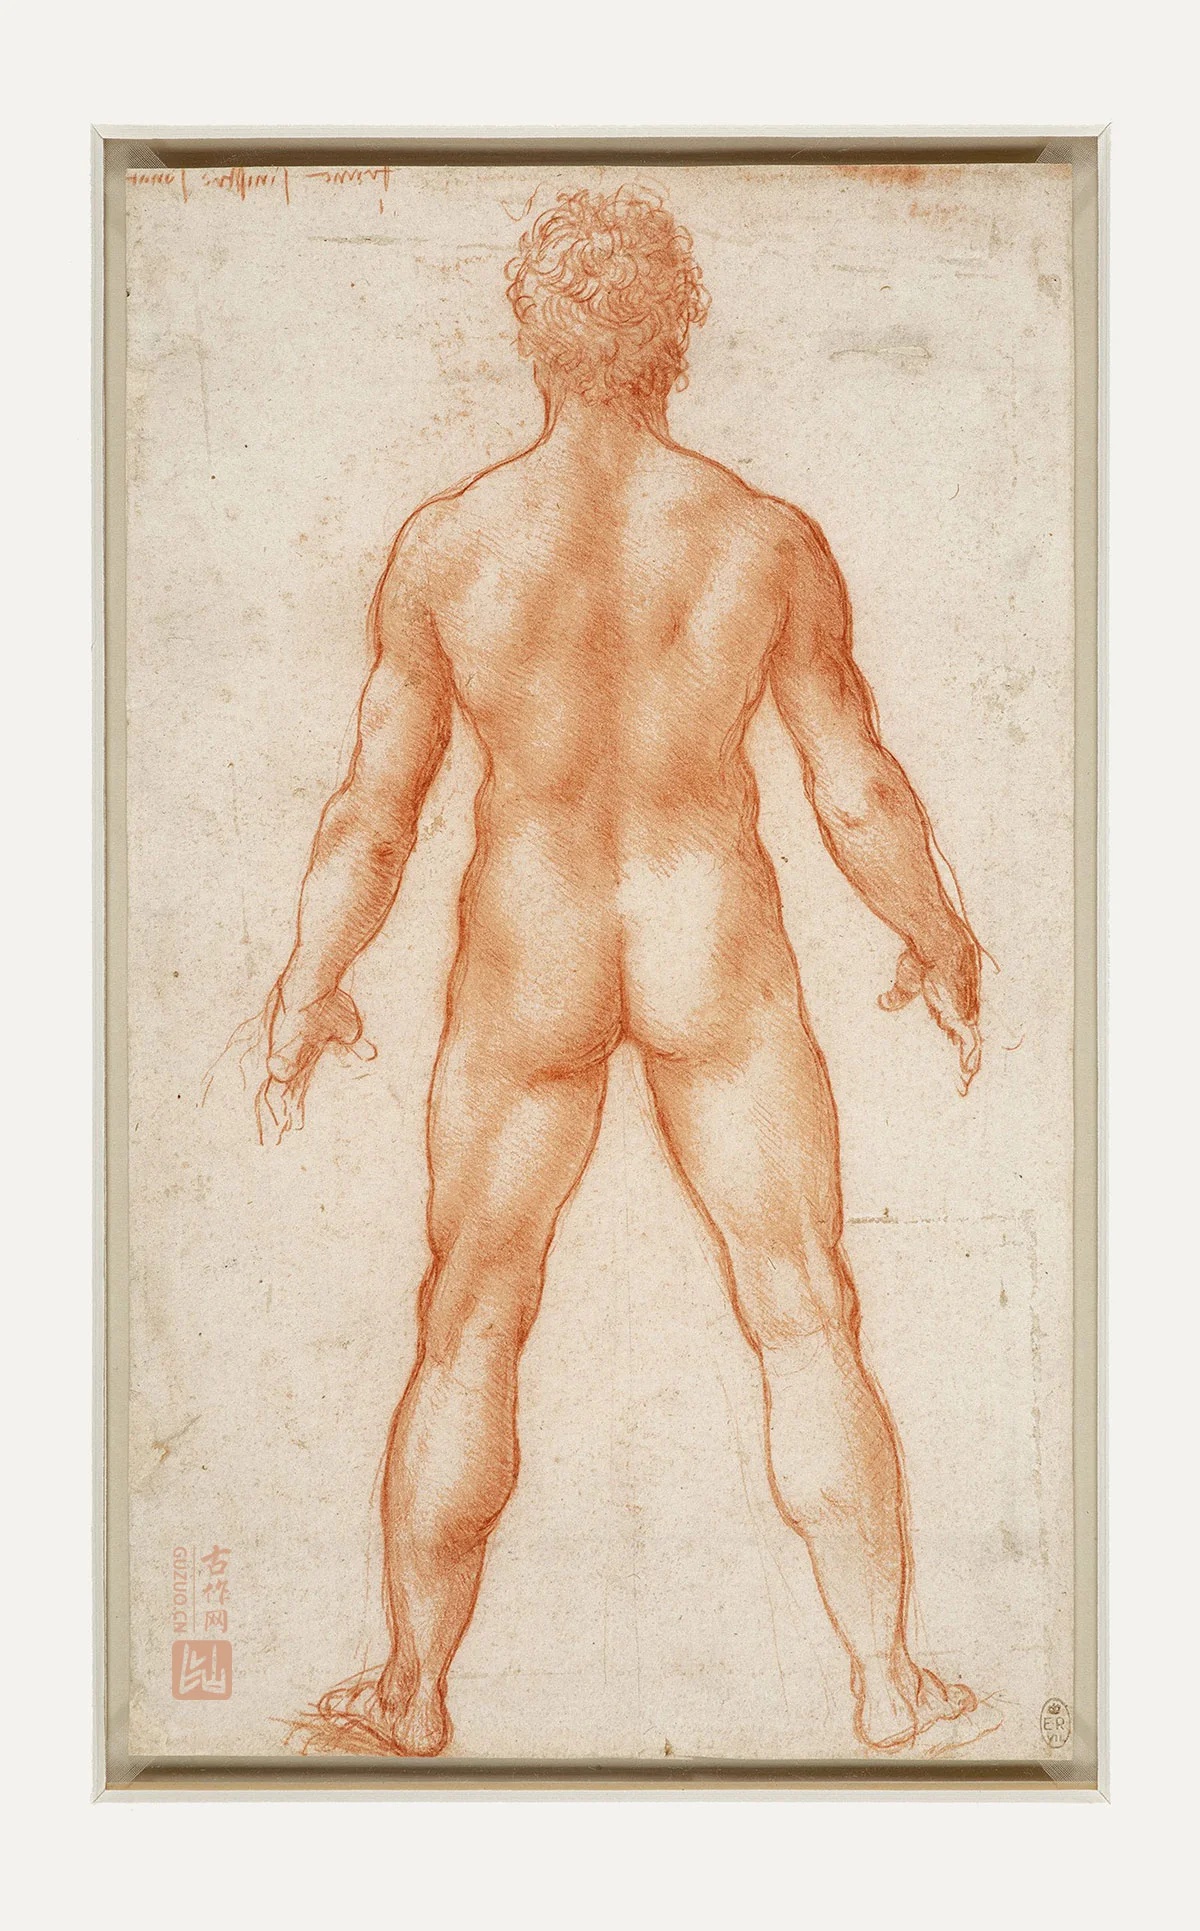 达芬奇素描画作品《男性人体的背部》